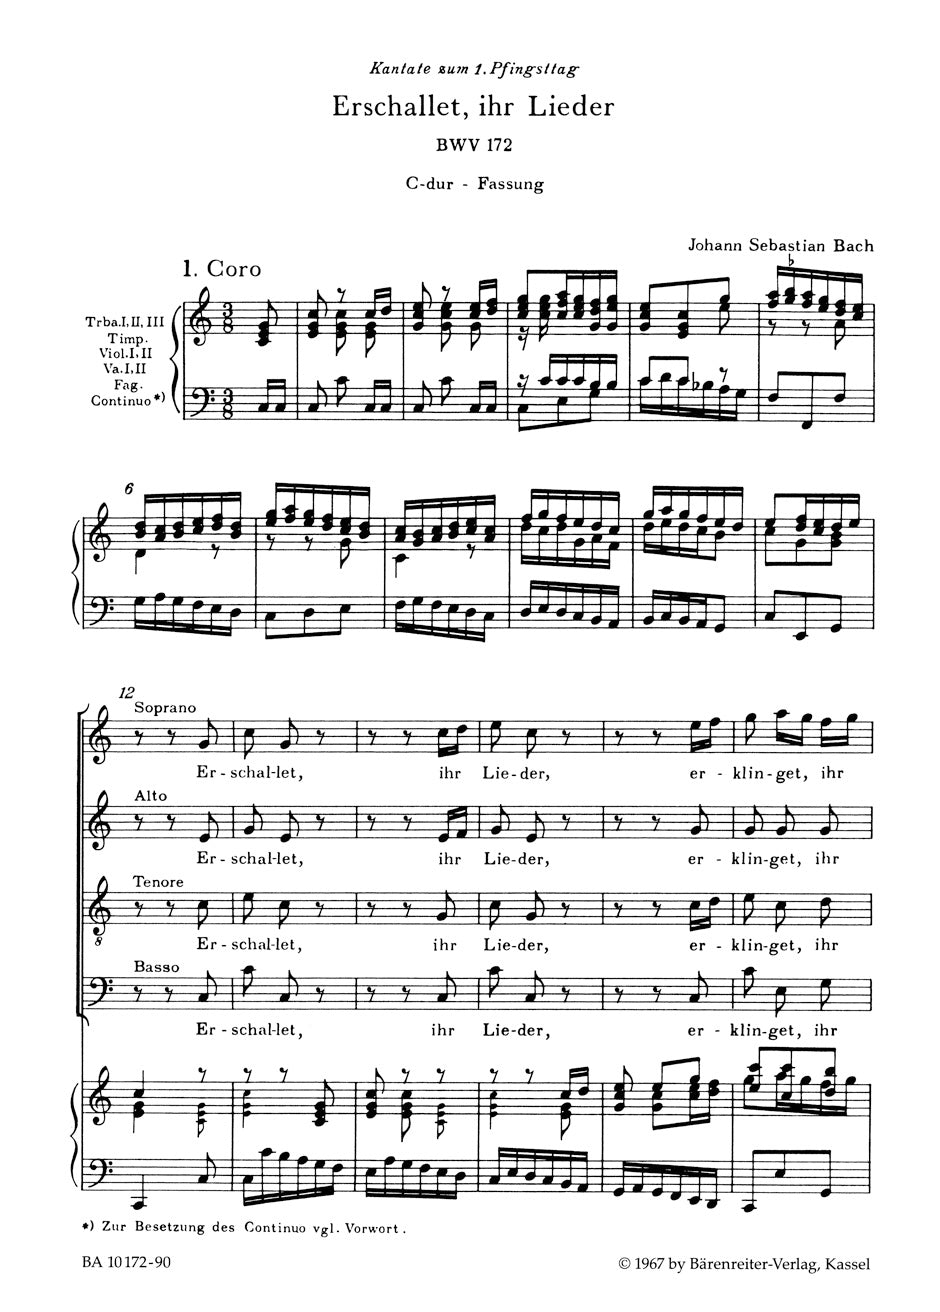 Bach Erschallet, ihr Lieder BWV 172 -Cantata for Whitsunday- (C major version)